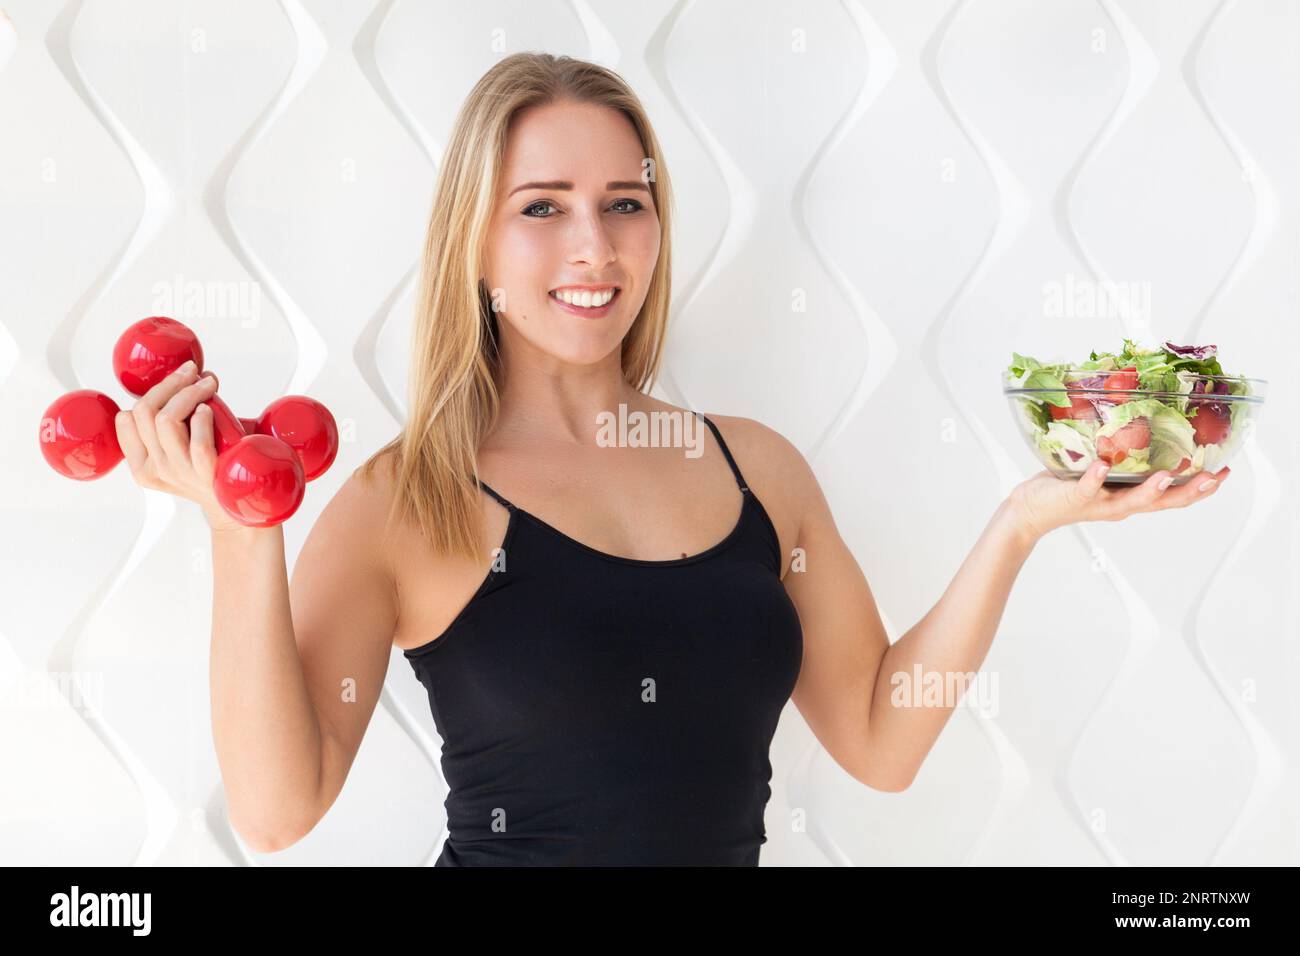 Junge Sportlerin in Sportbekleidung mit roten Kurzhanteln und grünem Salat in Glasschale. Gesundes Leben Bodybuilding Lifestyle Konzept Bild, Stockfoto